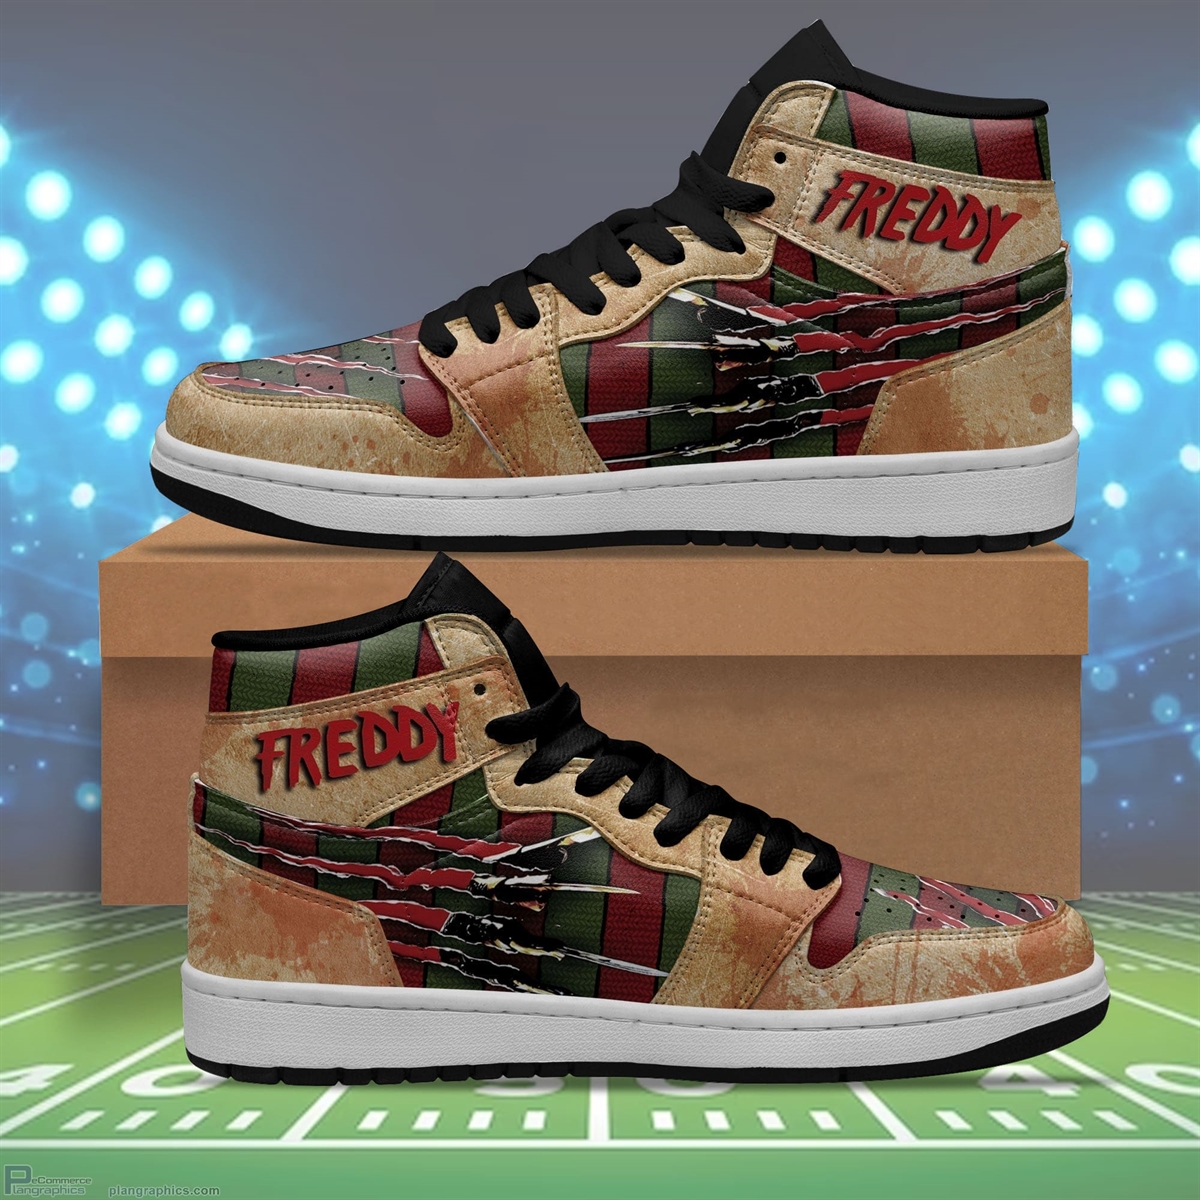 Freddy Krueger Air Jordan 1 High Sneaker Boots A Nightmare on Elm Street Sneakers